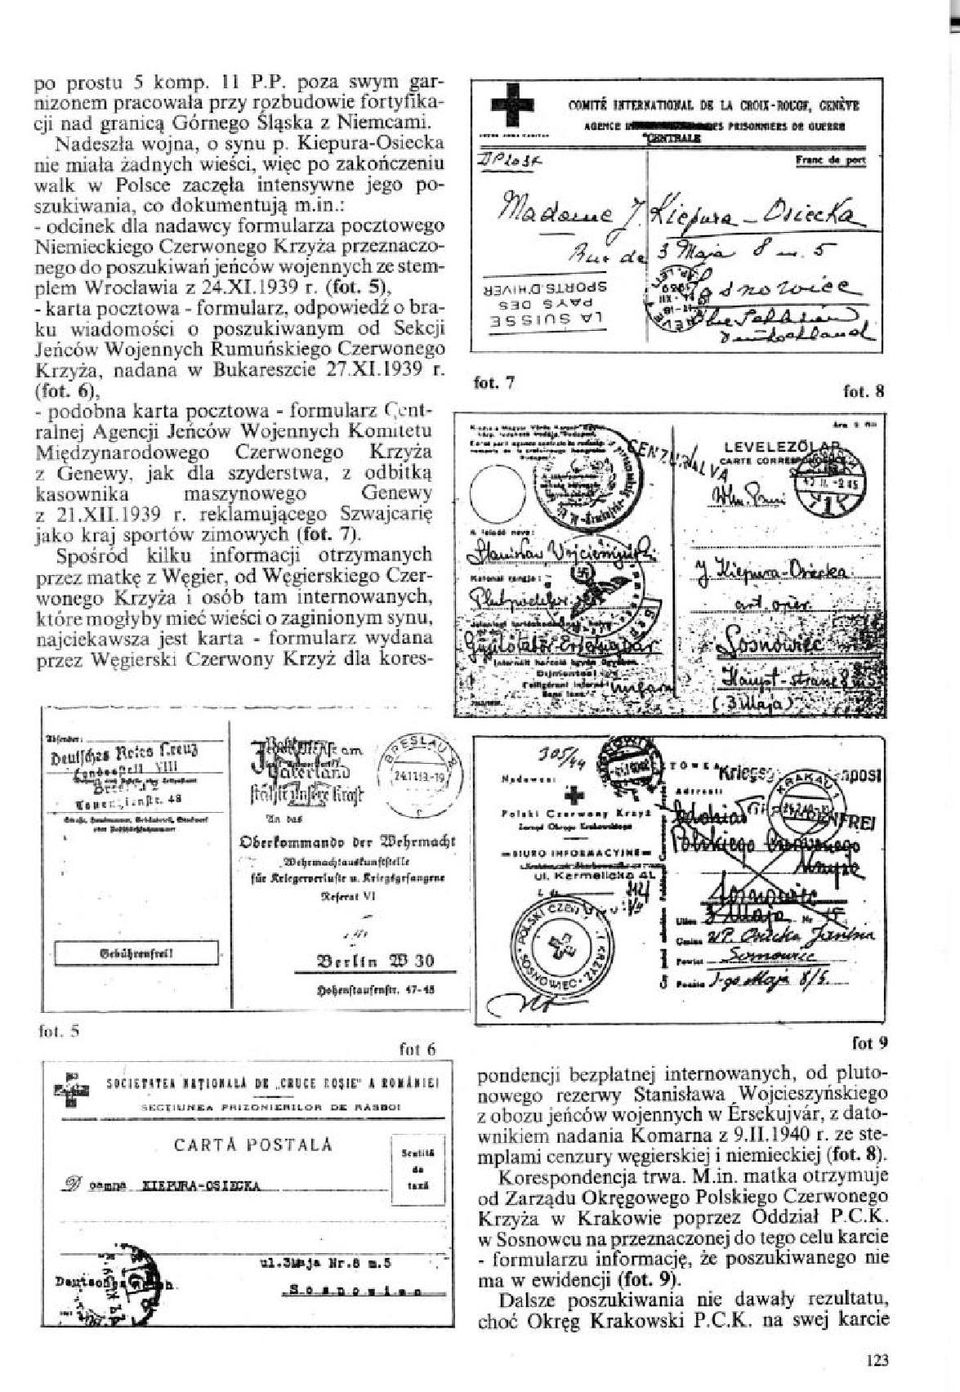 ensywne jego poszukiwania, co dokumentują m.in.: - odcinek dla nadawcy formularza pocztowego Niemieckiego Czerwonego Krzyża przeznaczonego do poszukiwań jeńców wojennych ze stemplem Wrocławia z 24.XI.